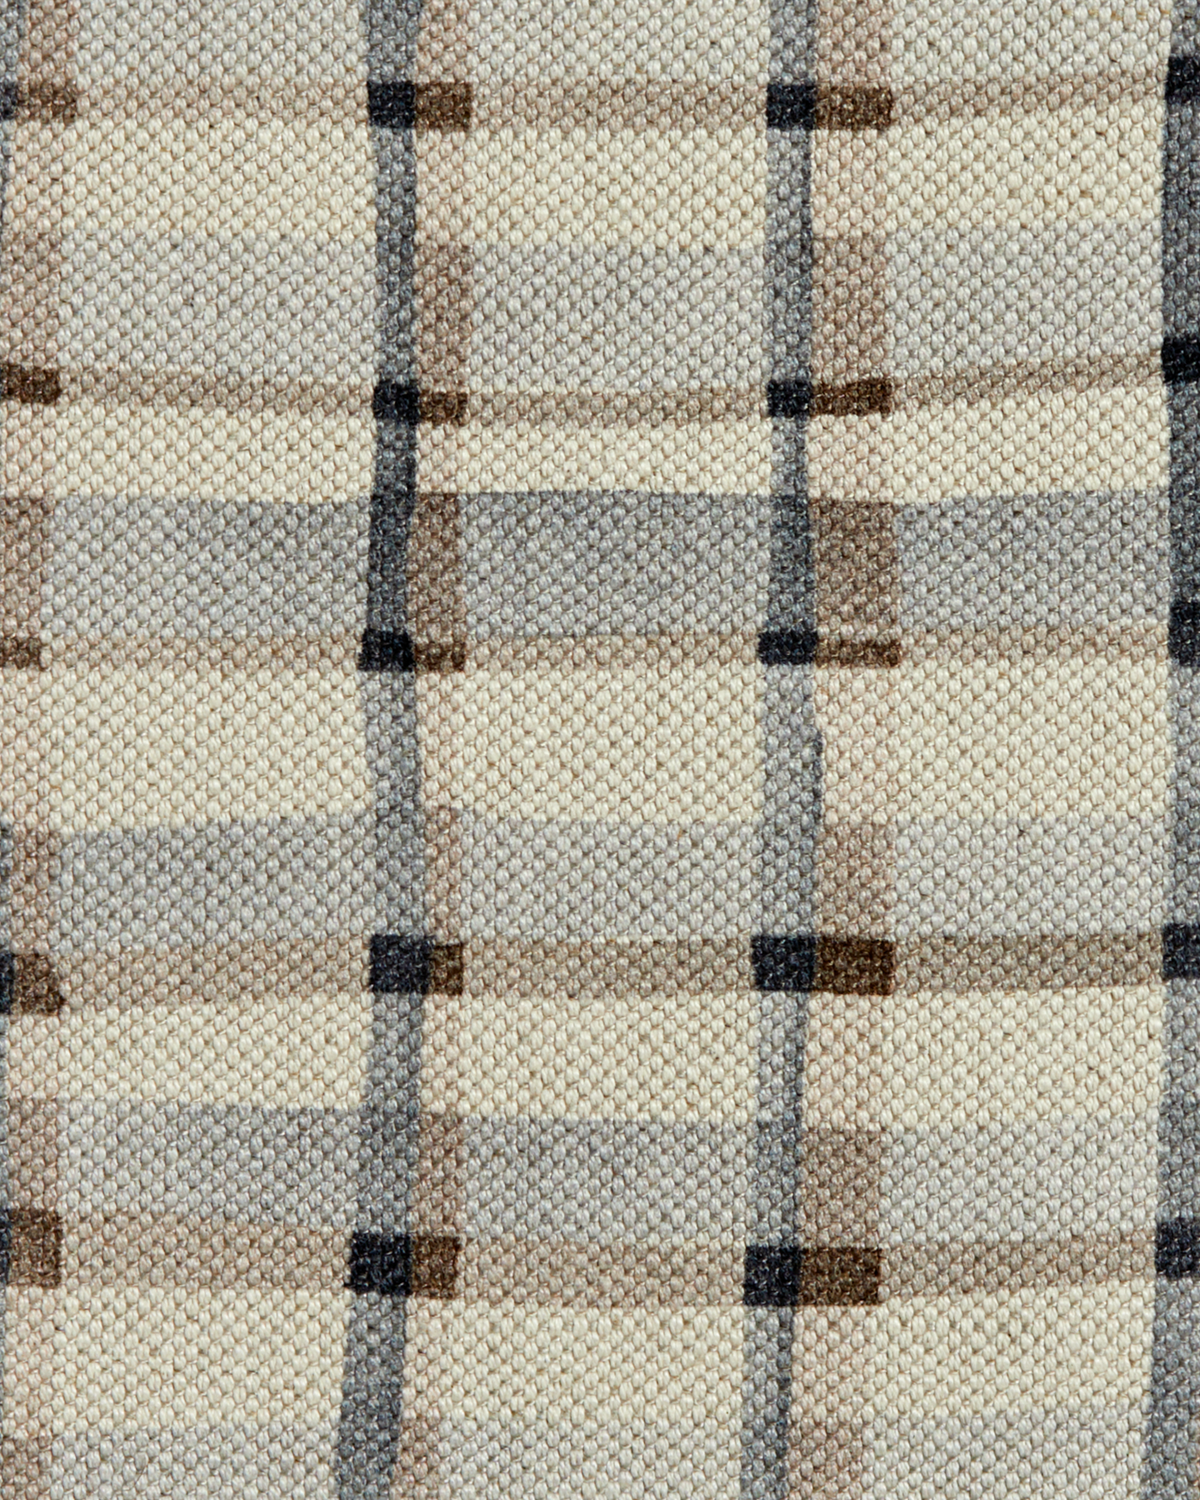 Mason Plaid Fabric in Natural/Gray